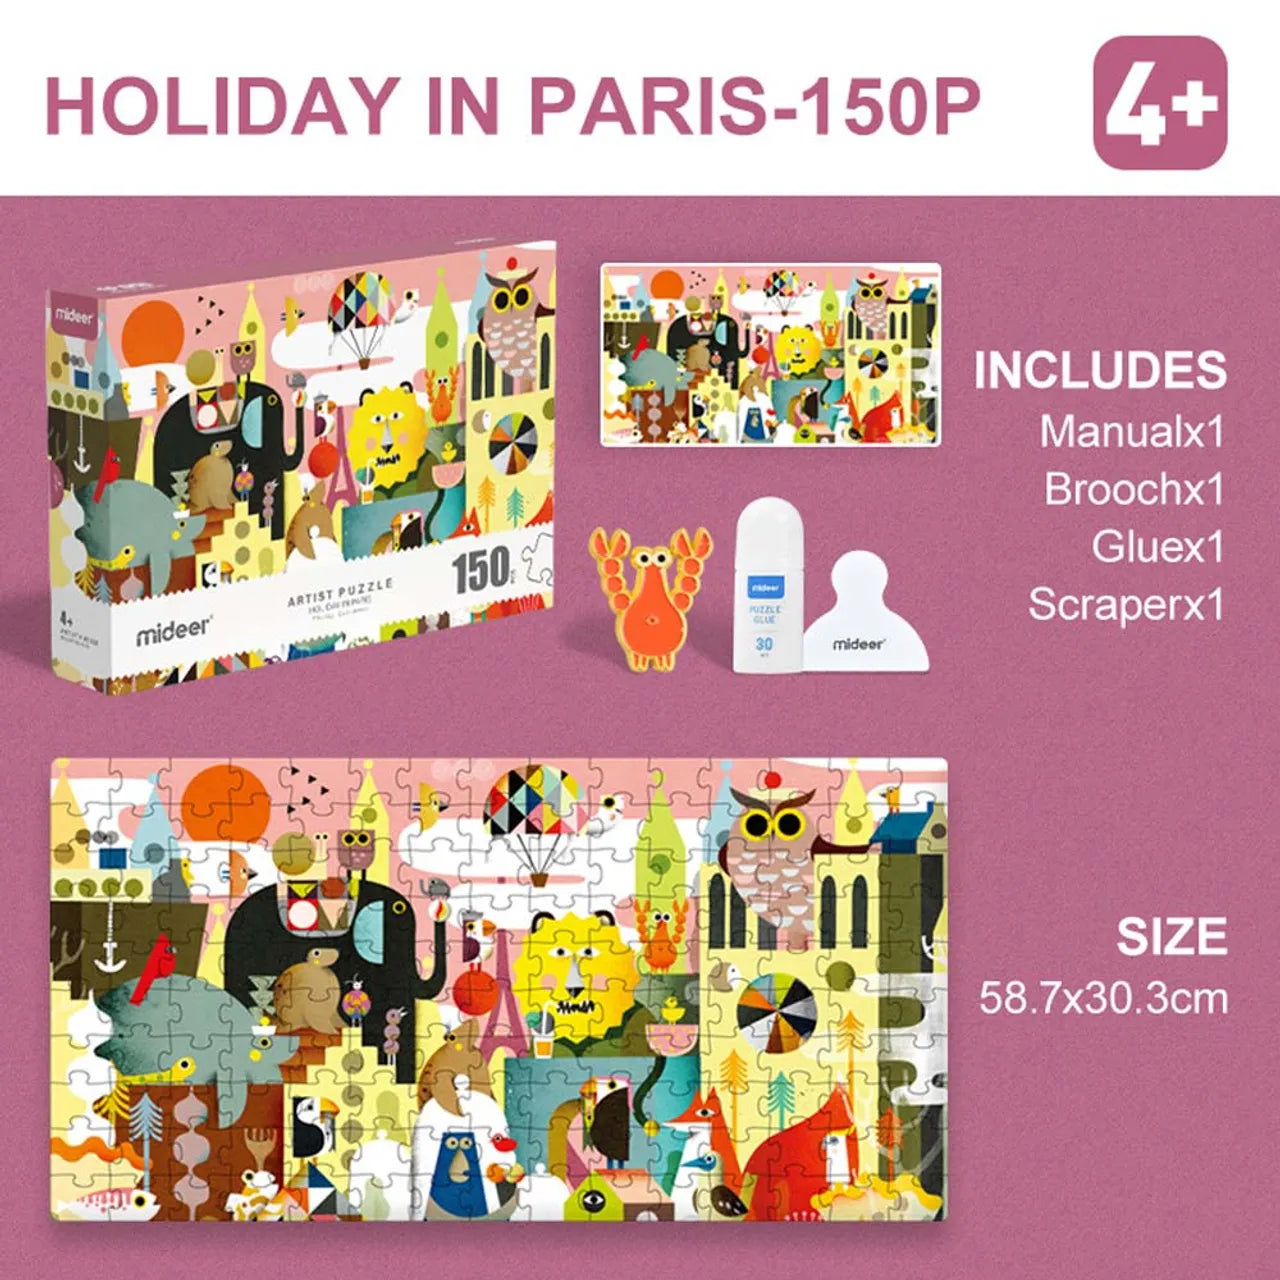 لعبة تركيب الفنان عطلة في باريس 150 قطعة من ميدير